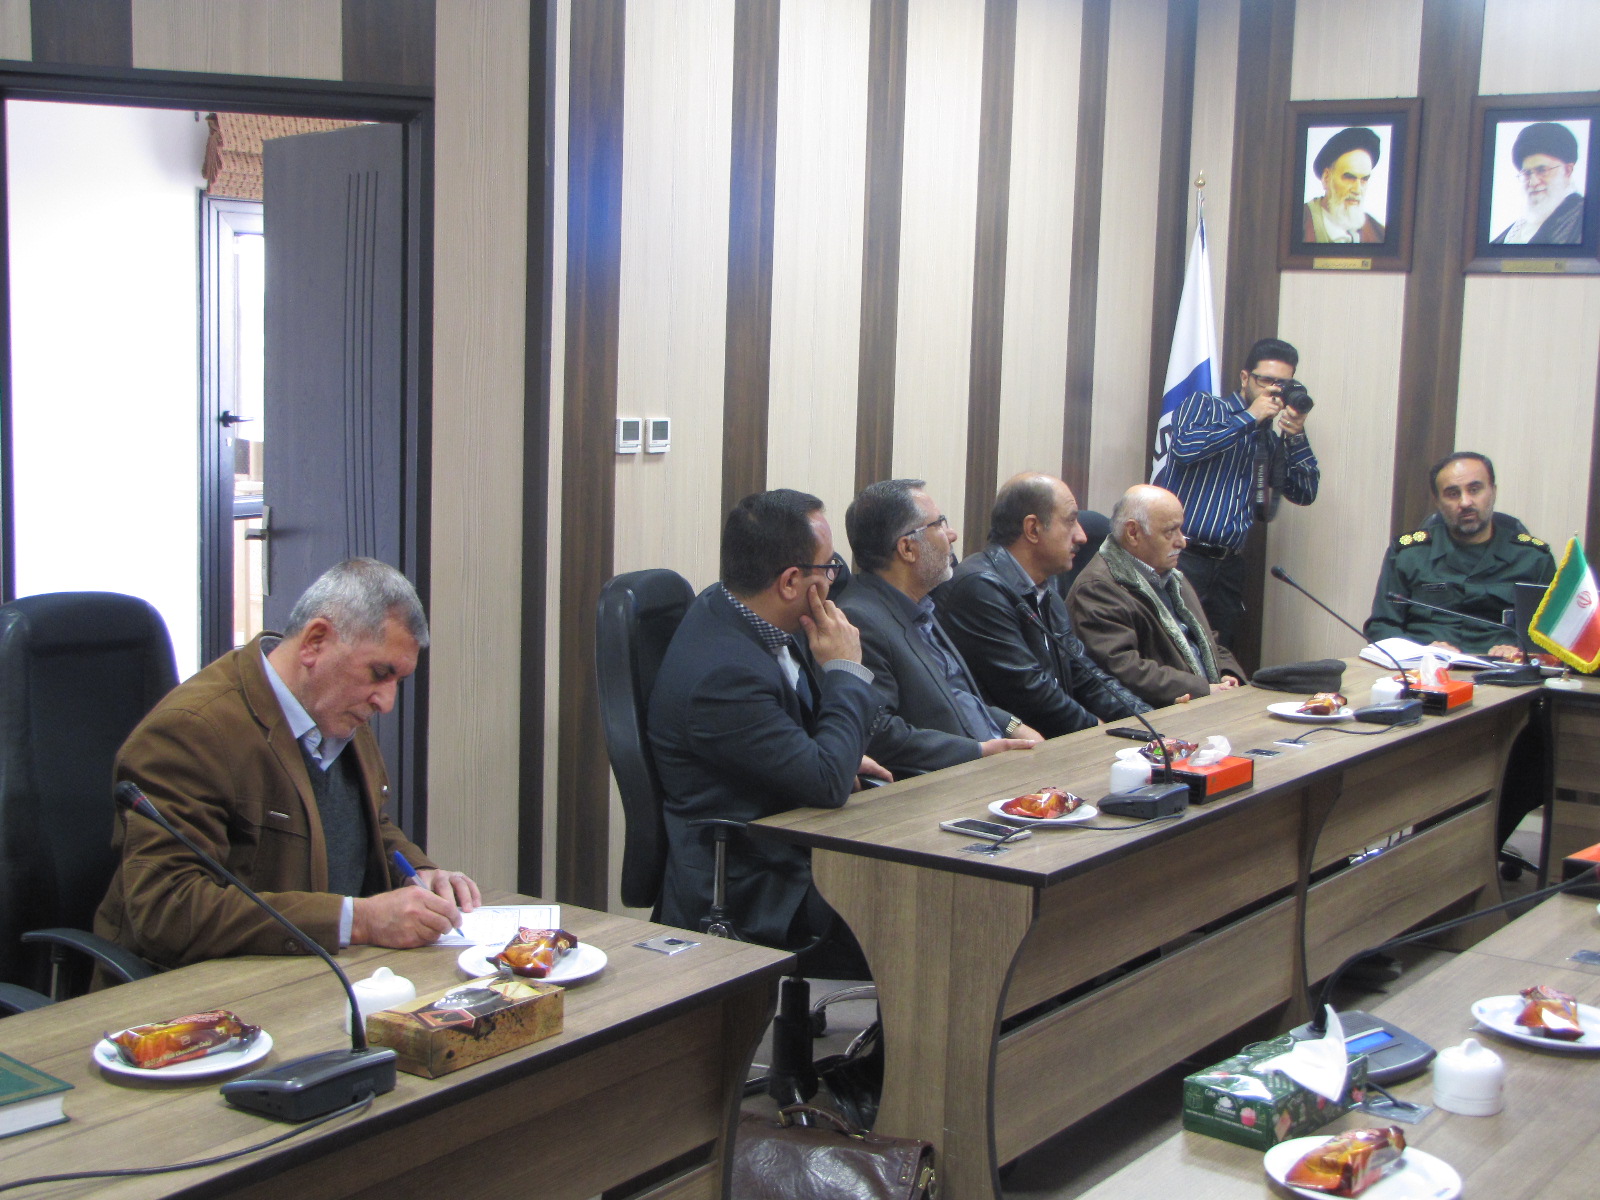 جلسه شورای امربه معروف ونهی ازمنکر اتاق اصناف و مجتمع های تجاری شیراز